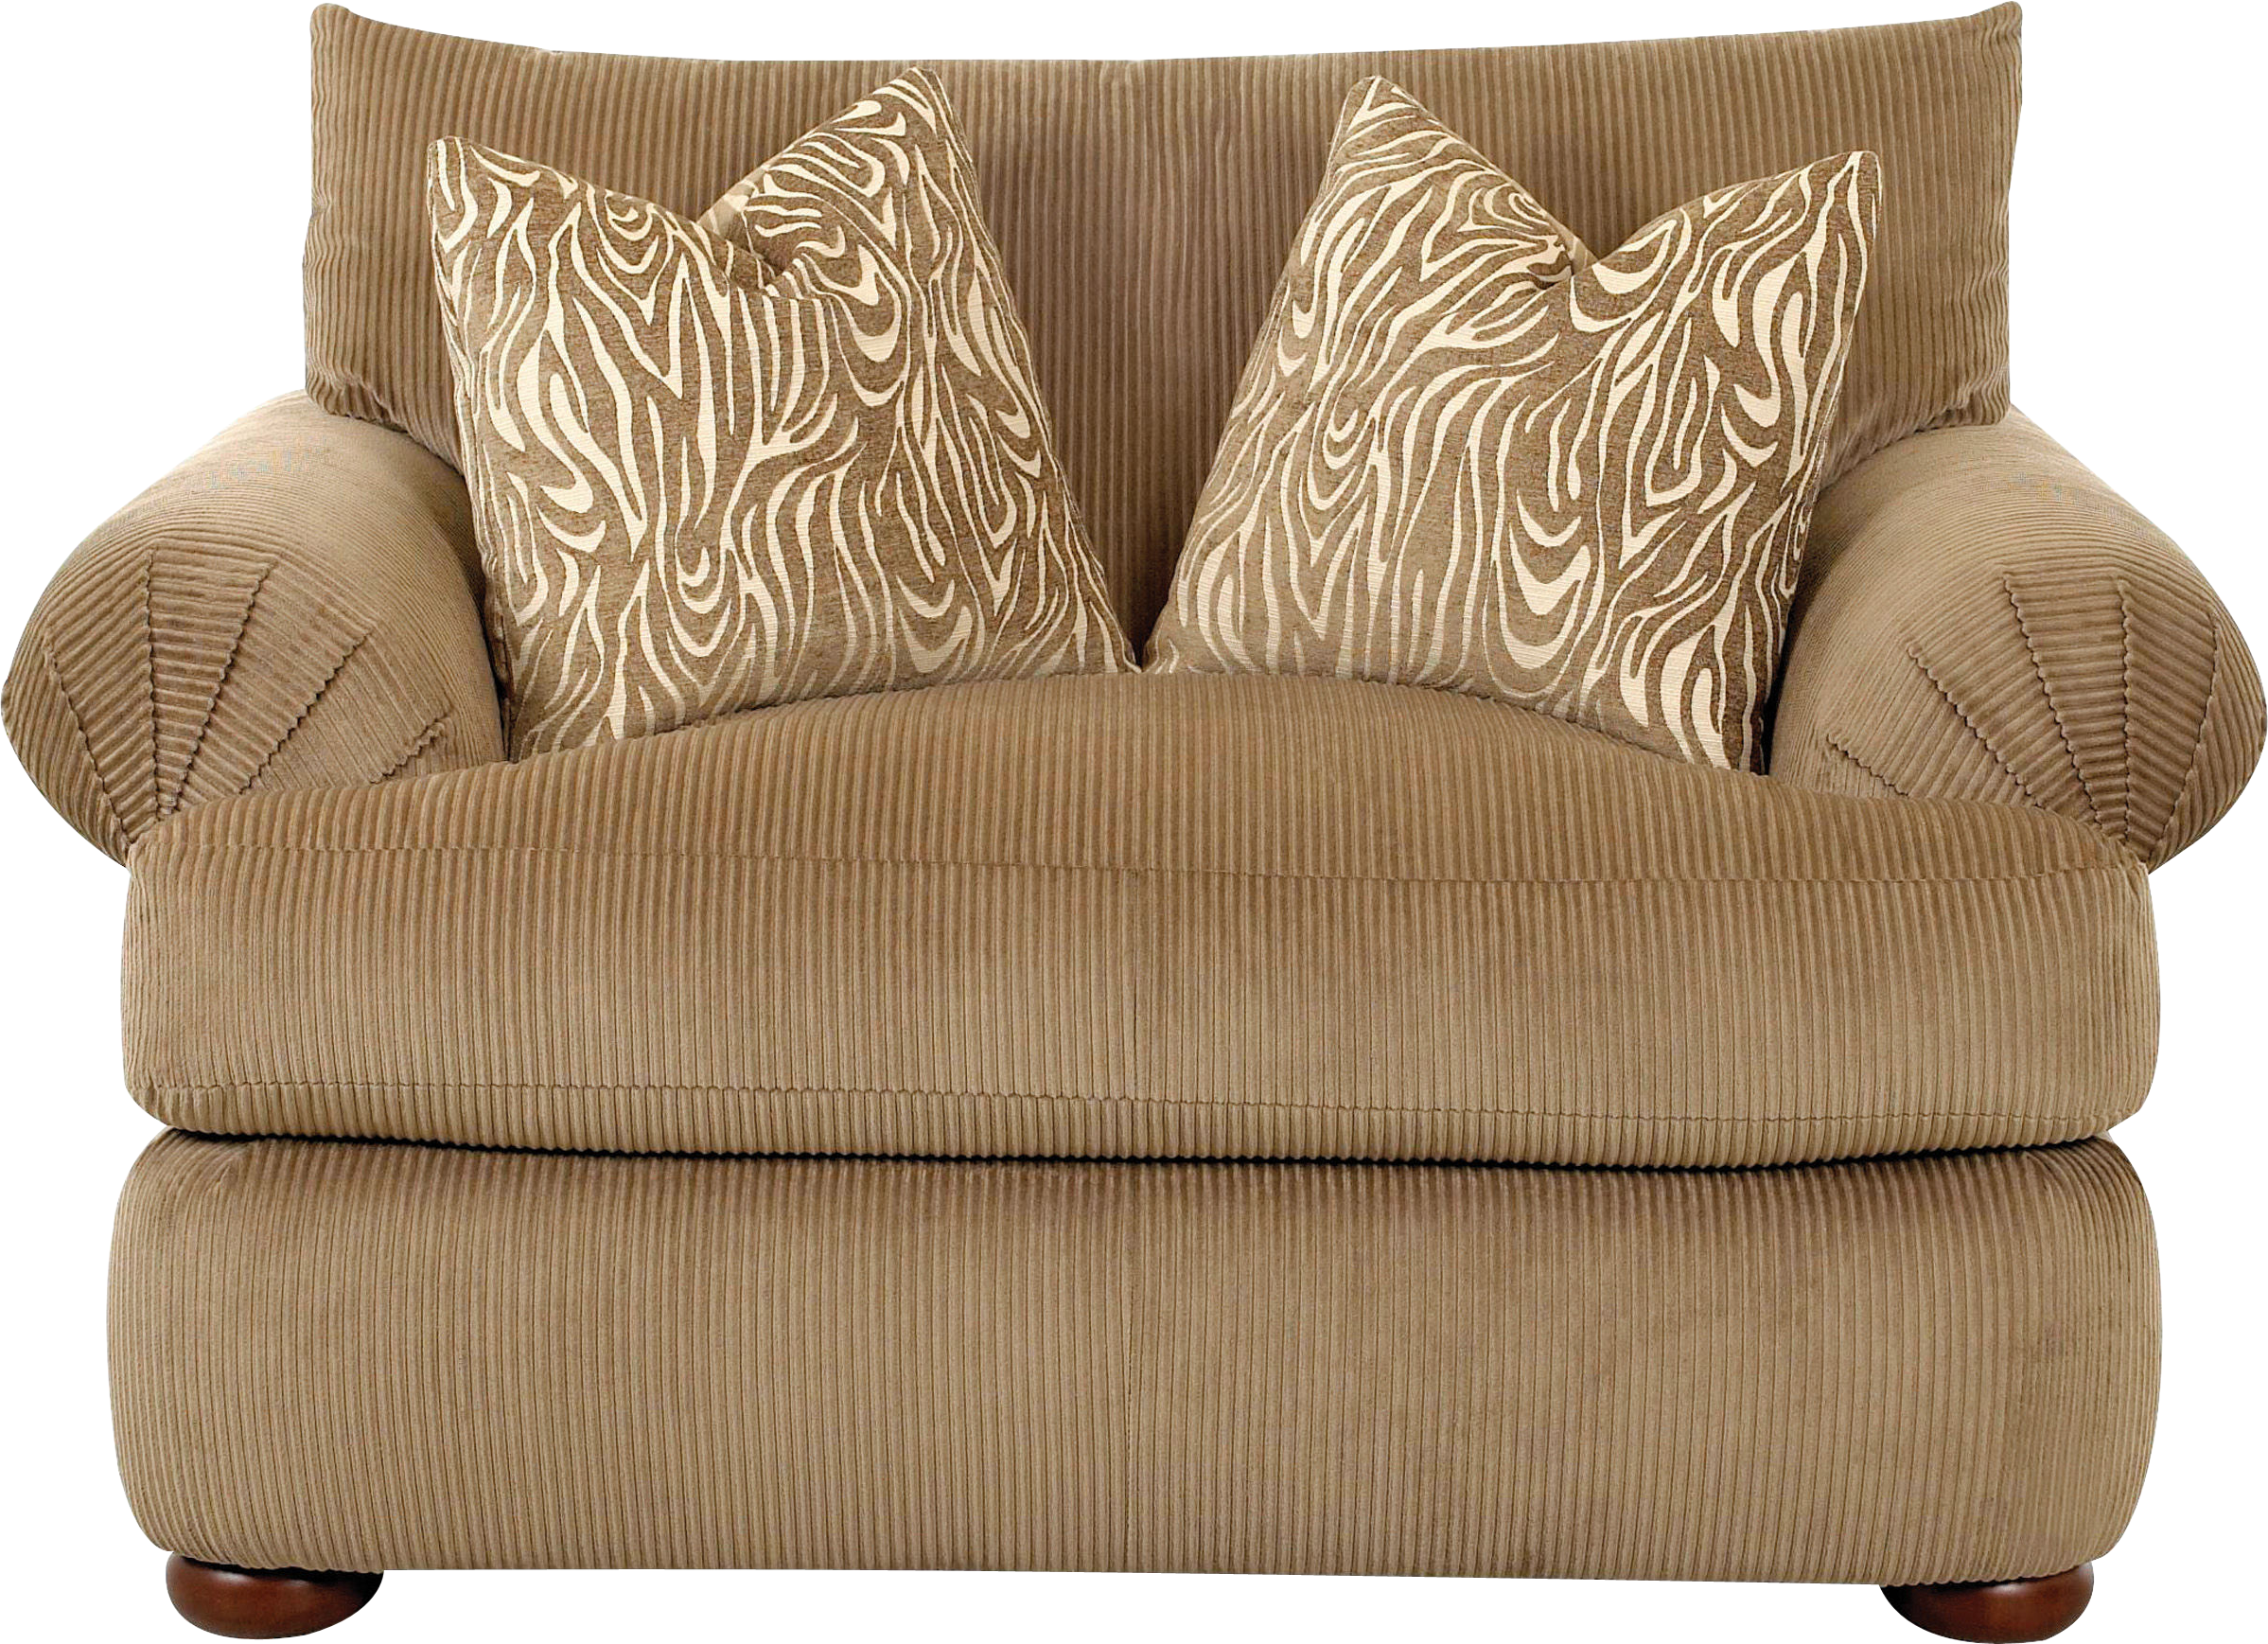 Sofa Chaise Longue PNG Transparent Image